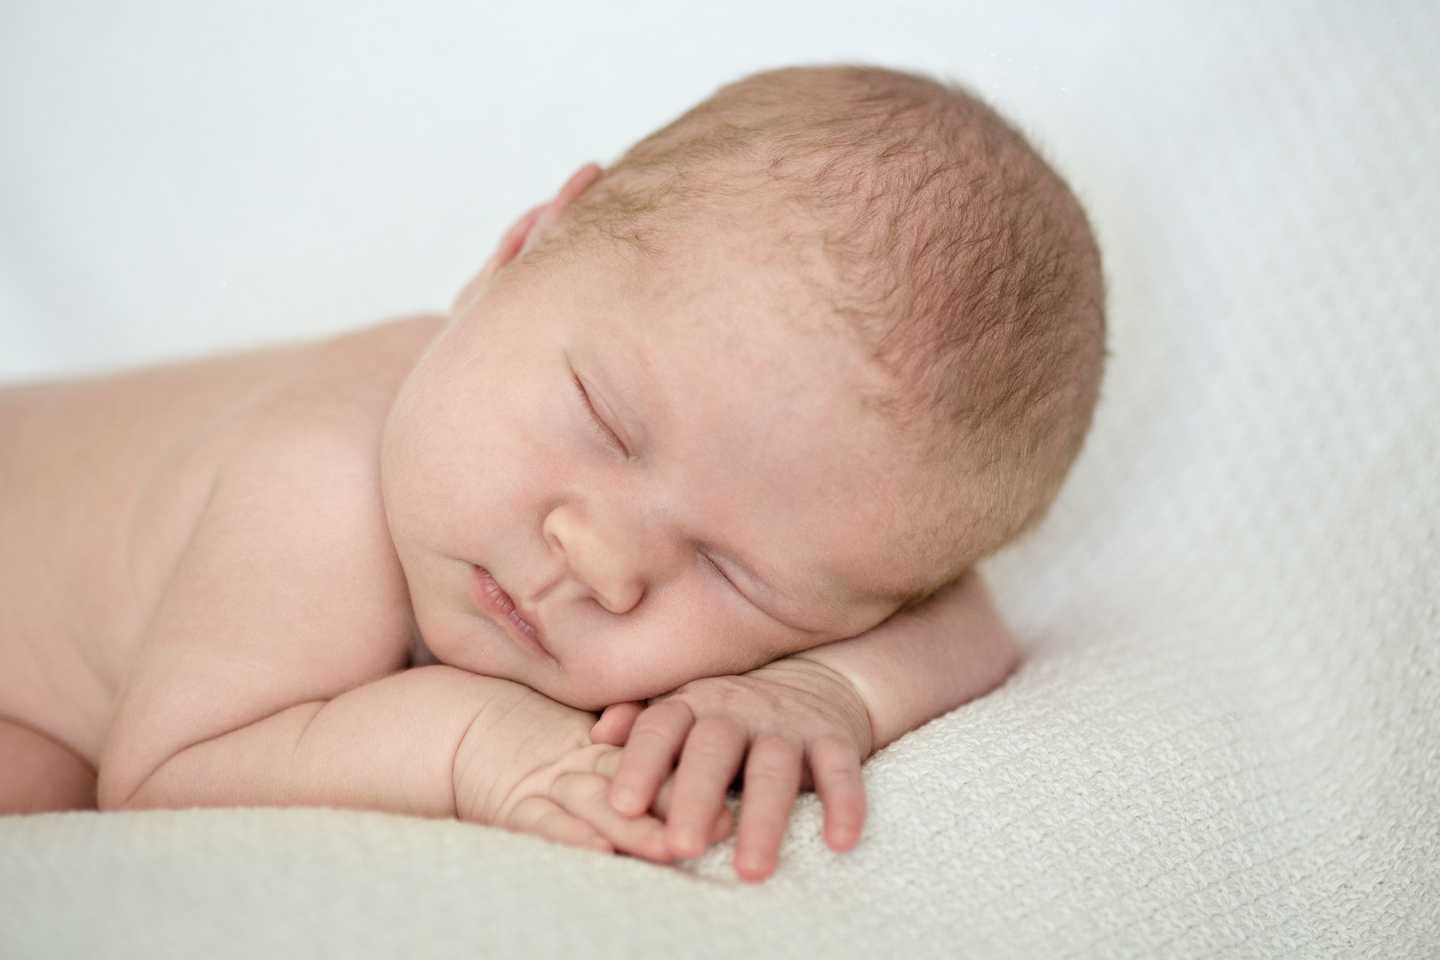 Bayi Prematur Disebut Sulit Berprestasi, Begini Kata Psikolog